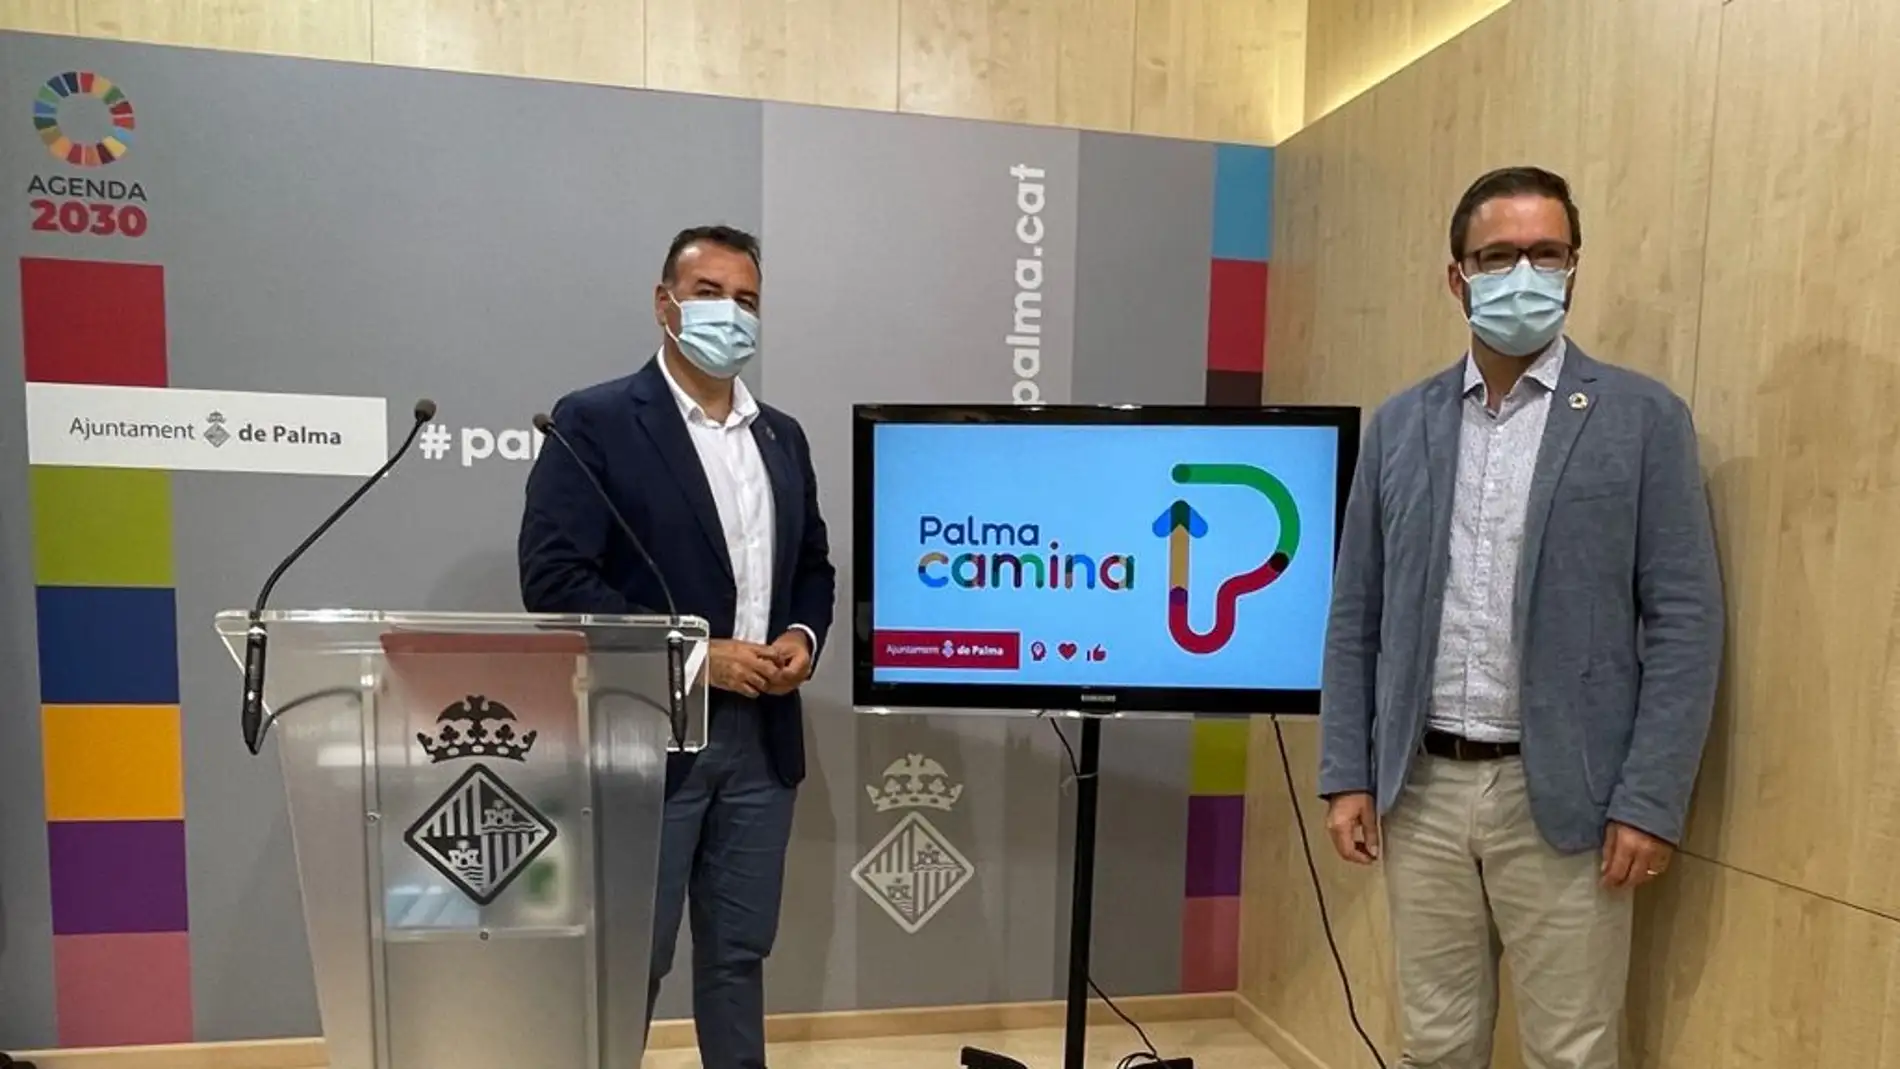 El Alcalde de Palma, José Hila, junto al regidor de mobilitat, Xisco Dalmau, en la presentación del plan "Palma camina". 